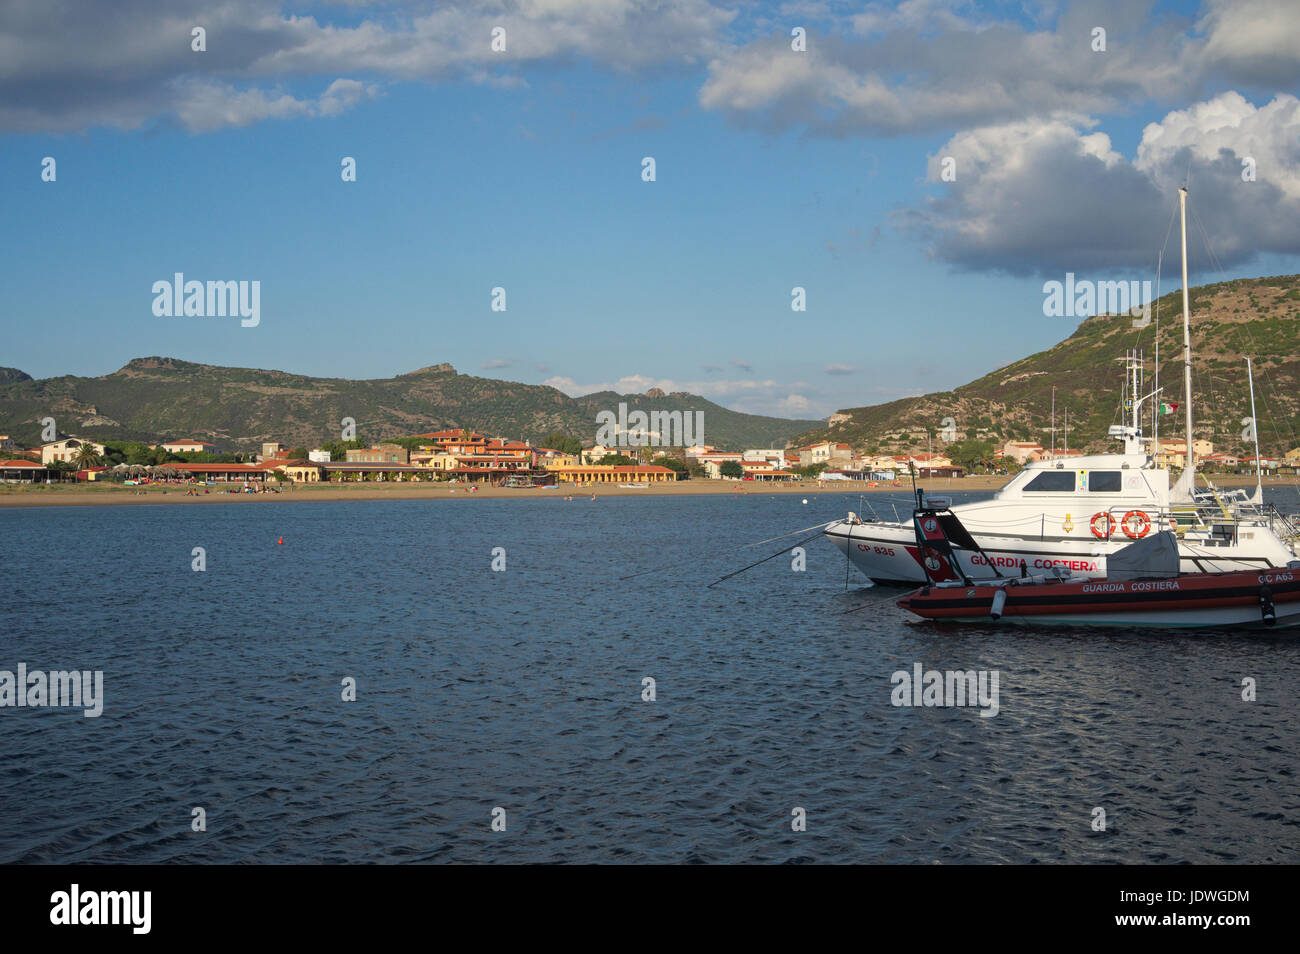 coast guard motorboats in Bosa Marina, Sardinia, Italy Stock Photo